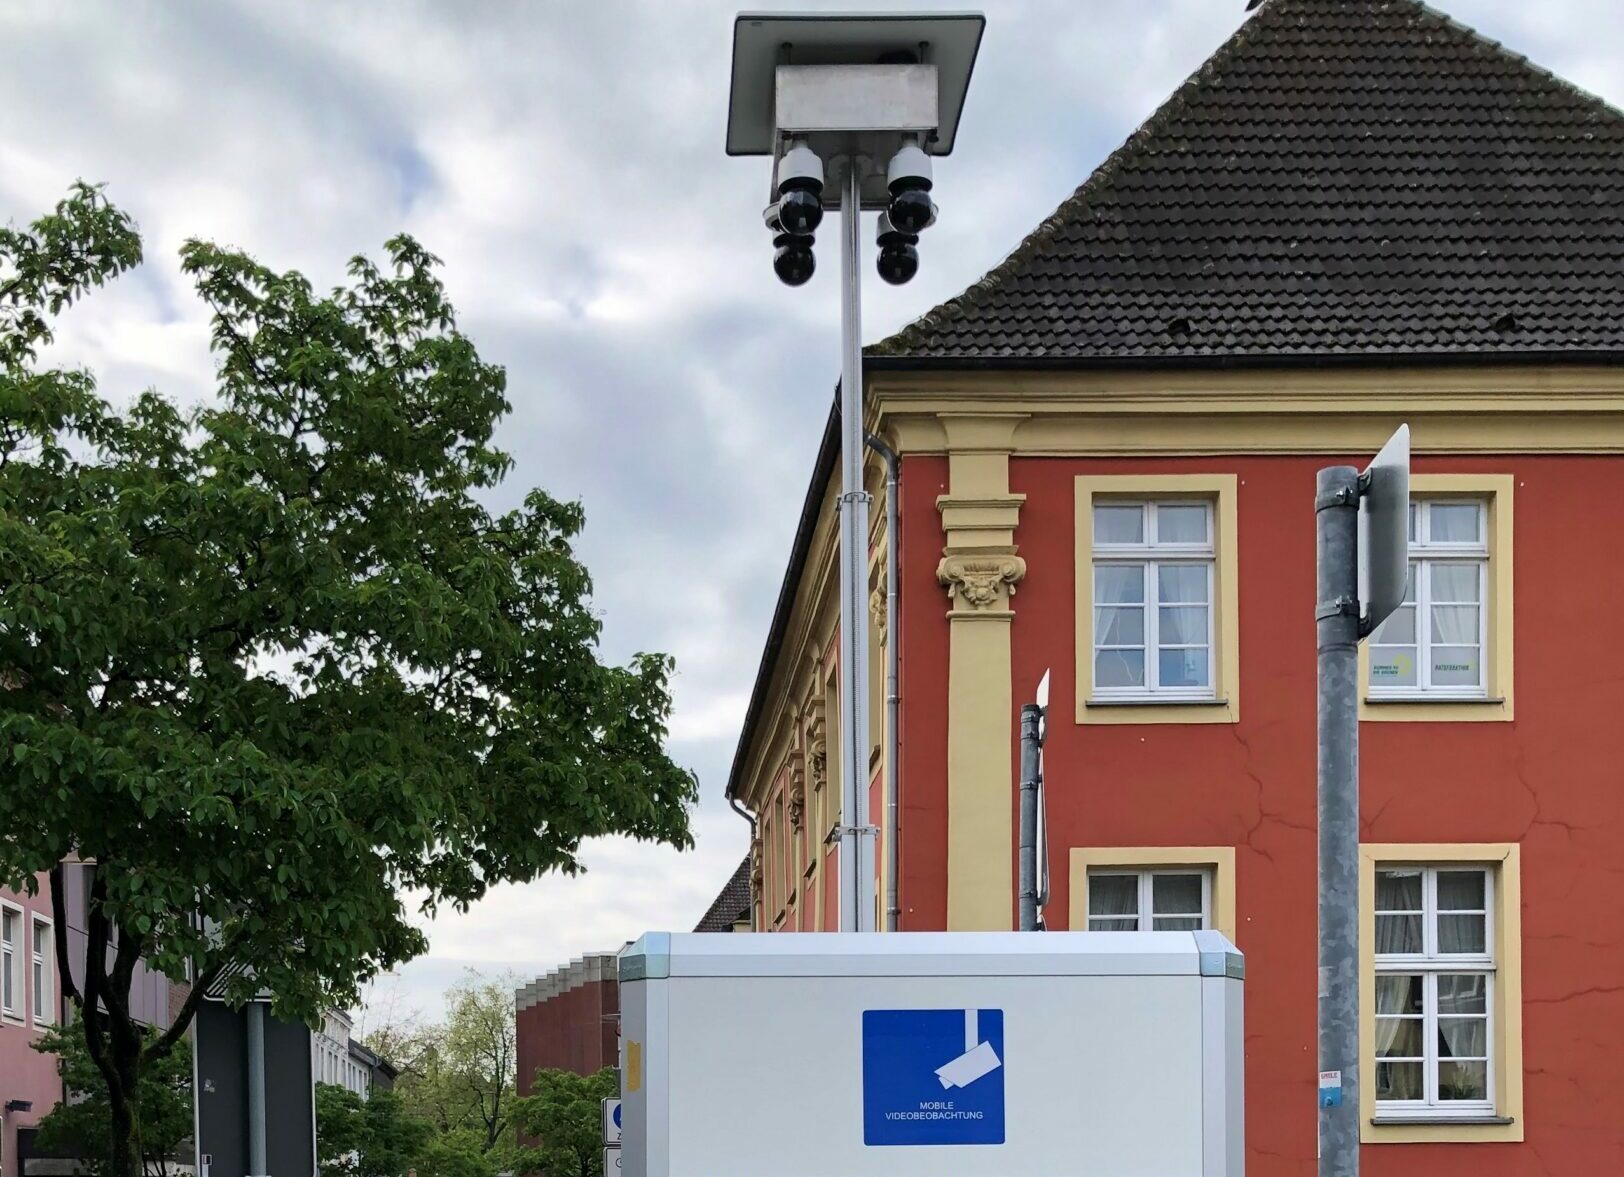 Mobile Videoüberwachung in Hamm: Aufs Bahnhofsquartier folgt jetzt die Südstraße